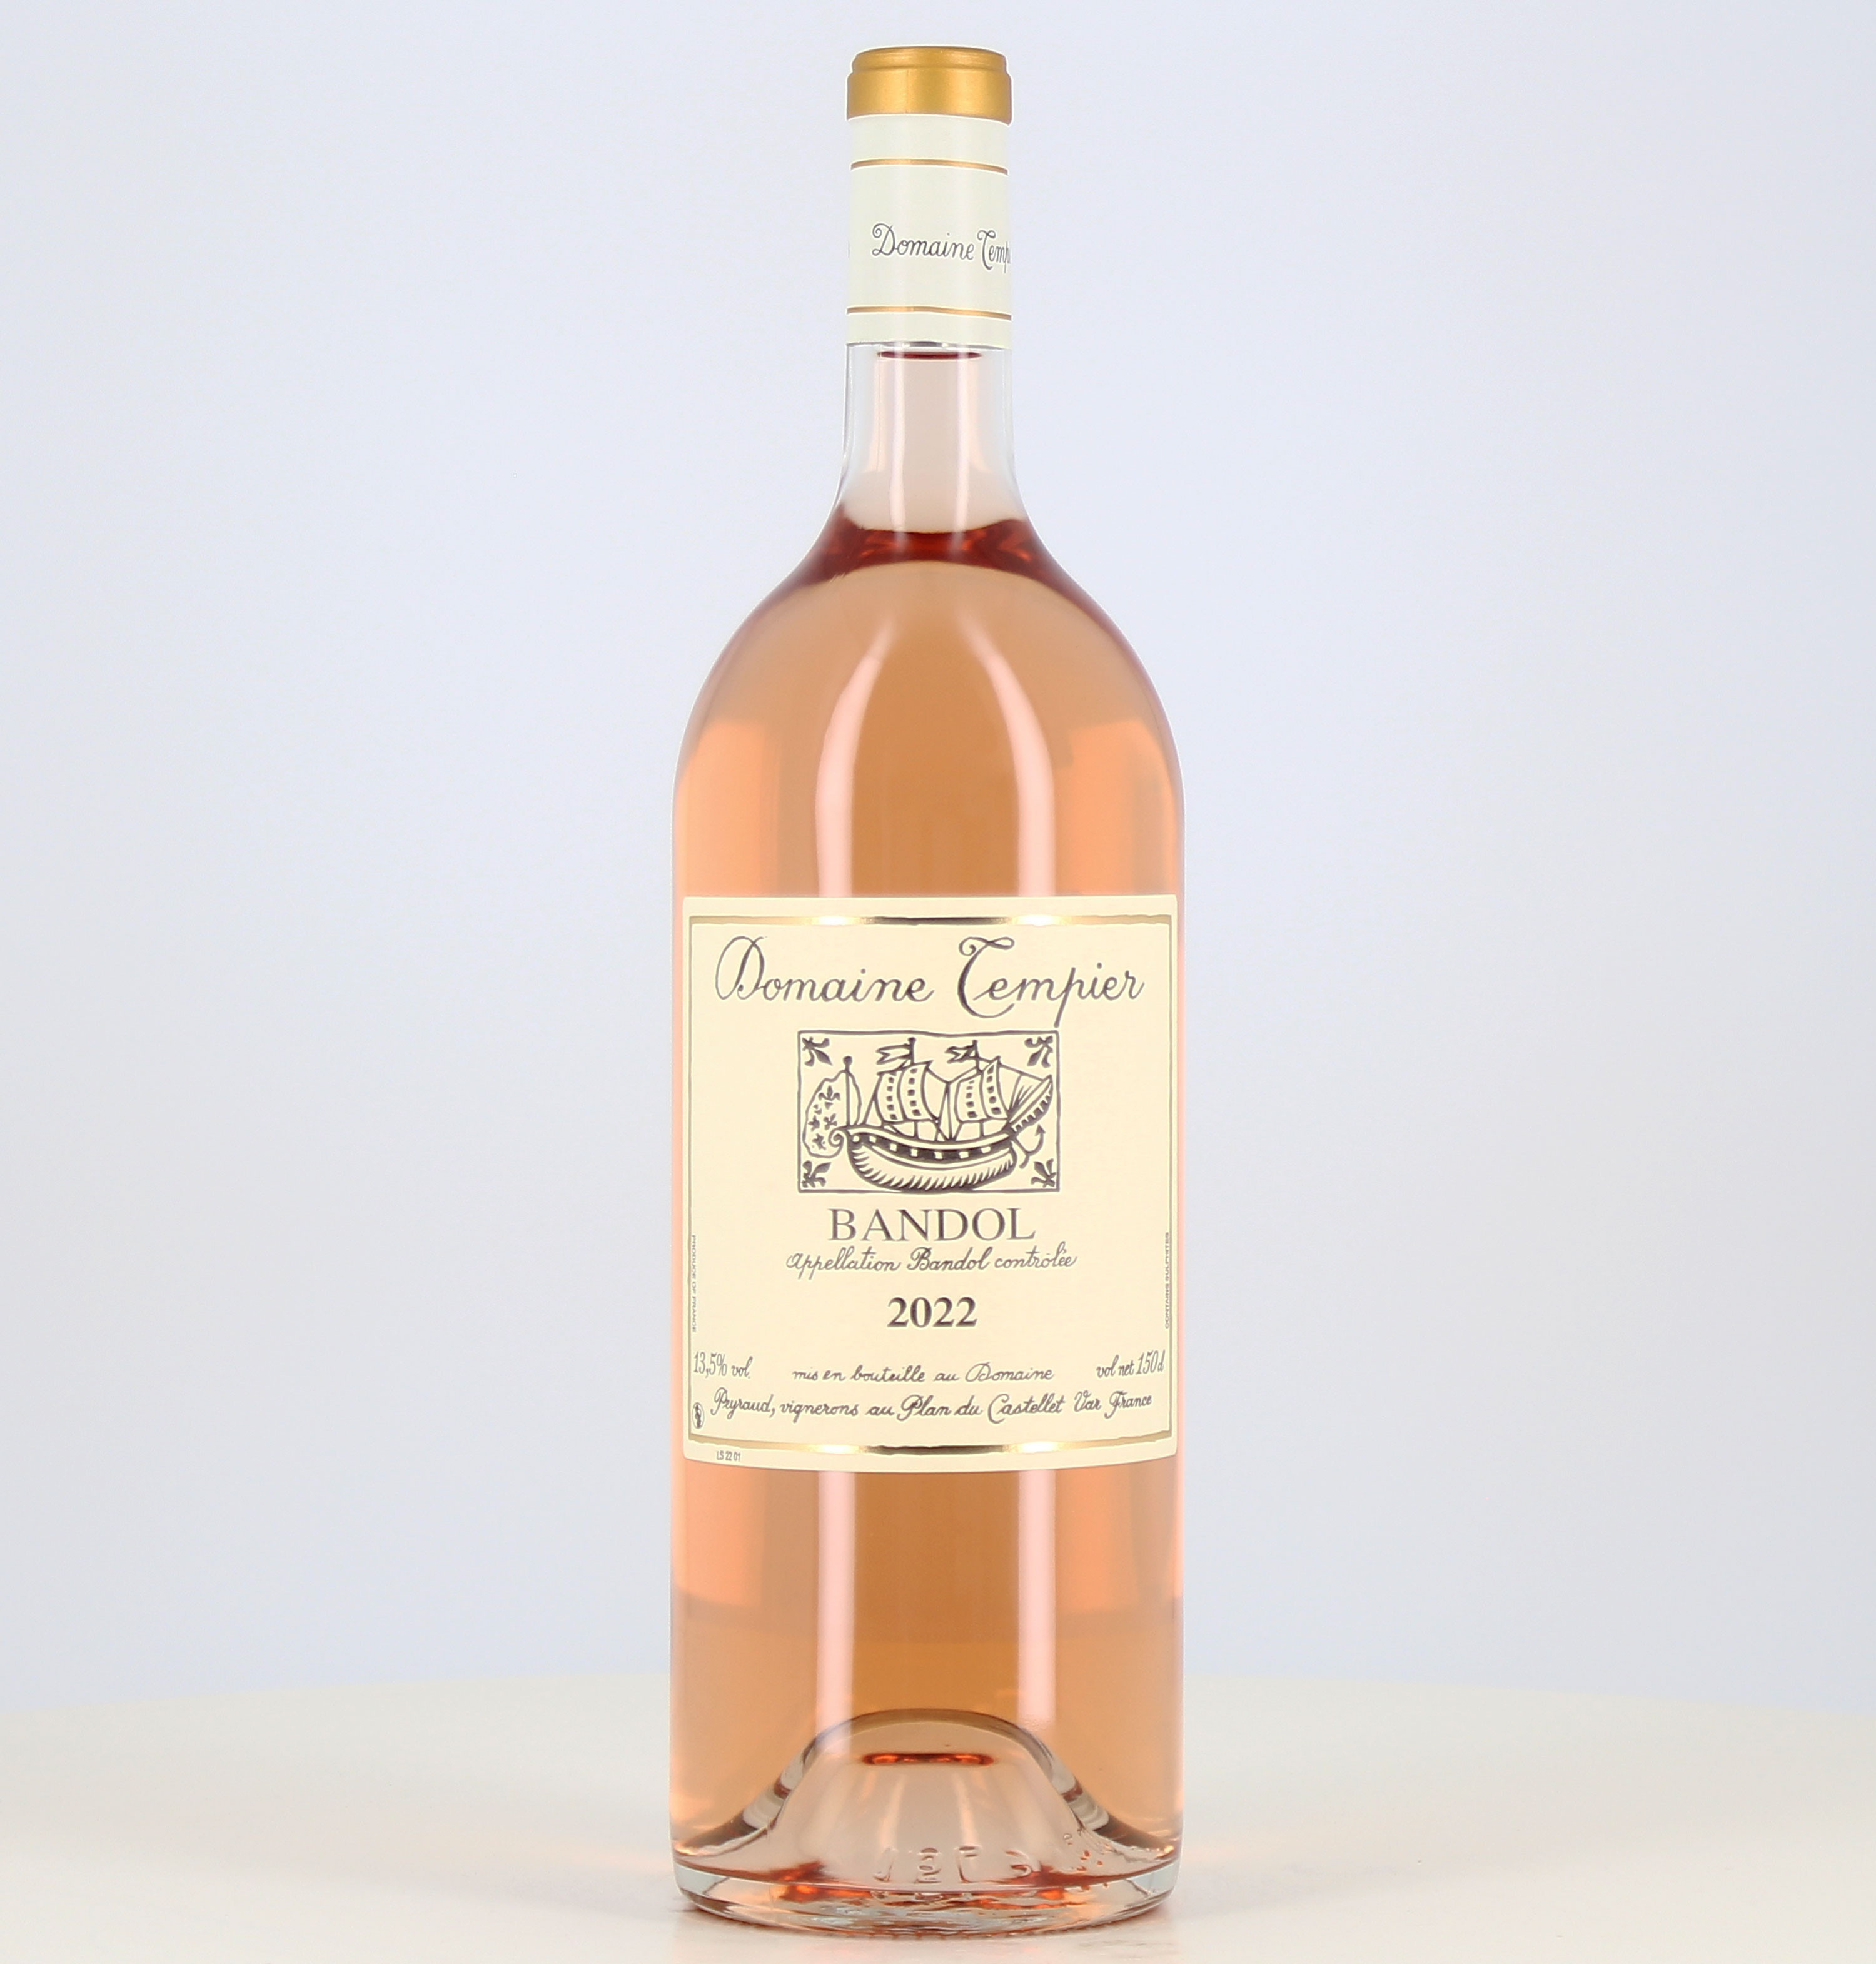 Magnum of Bandol rosé wine Domaine Tempier 2022 